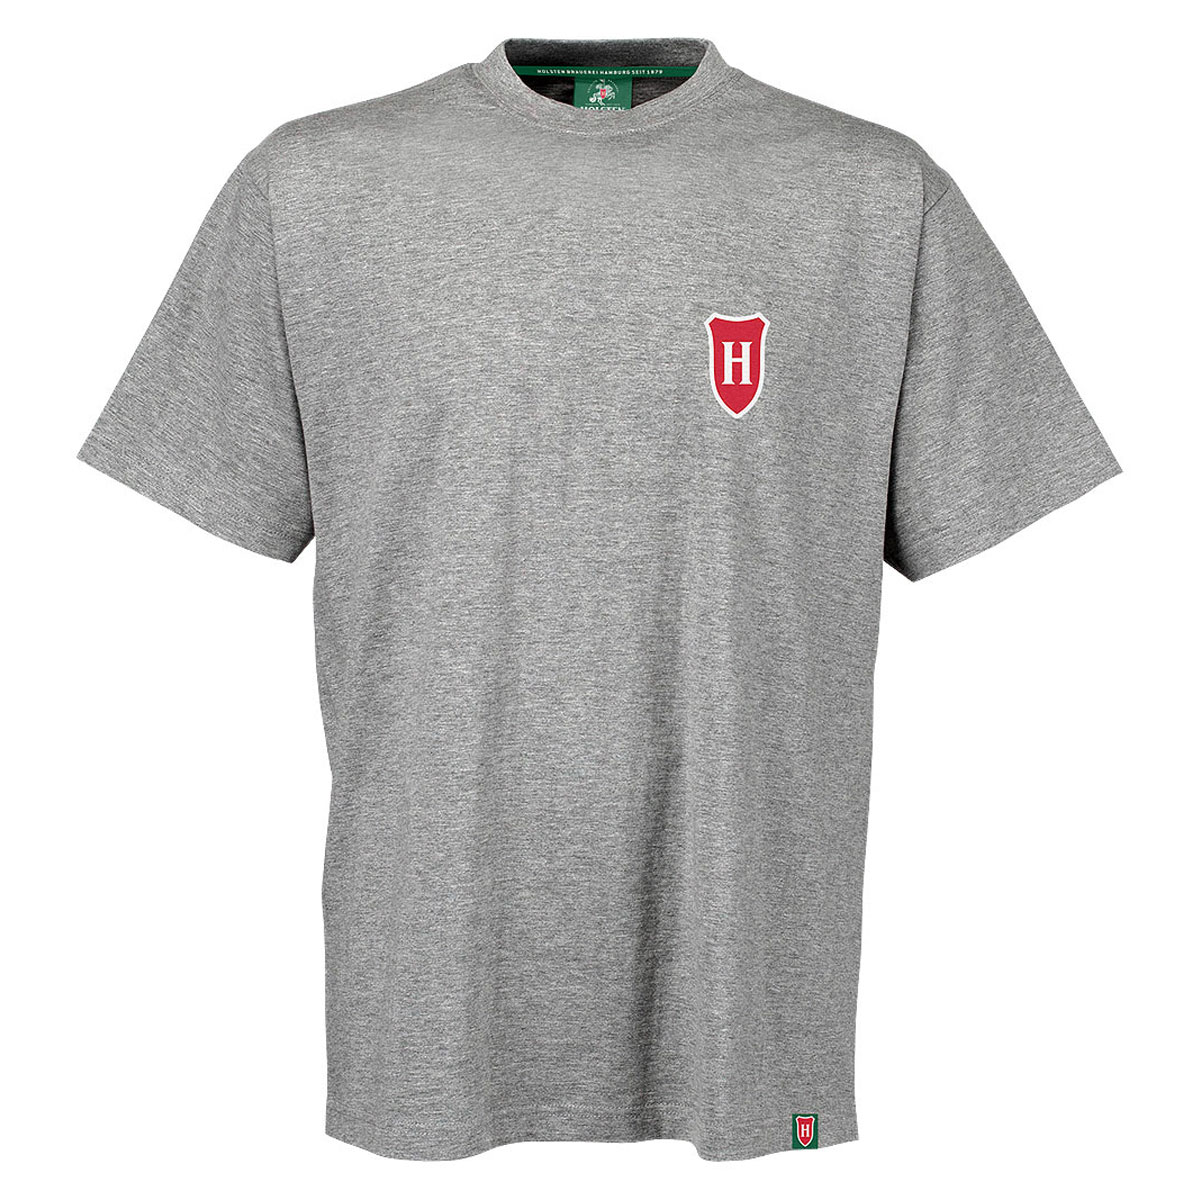 Herren-T-Shirt, grau-meliert „Emblem“